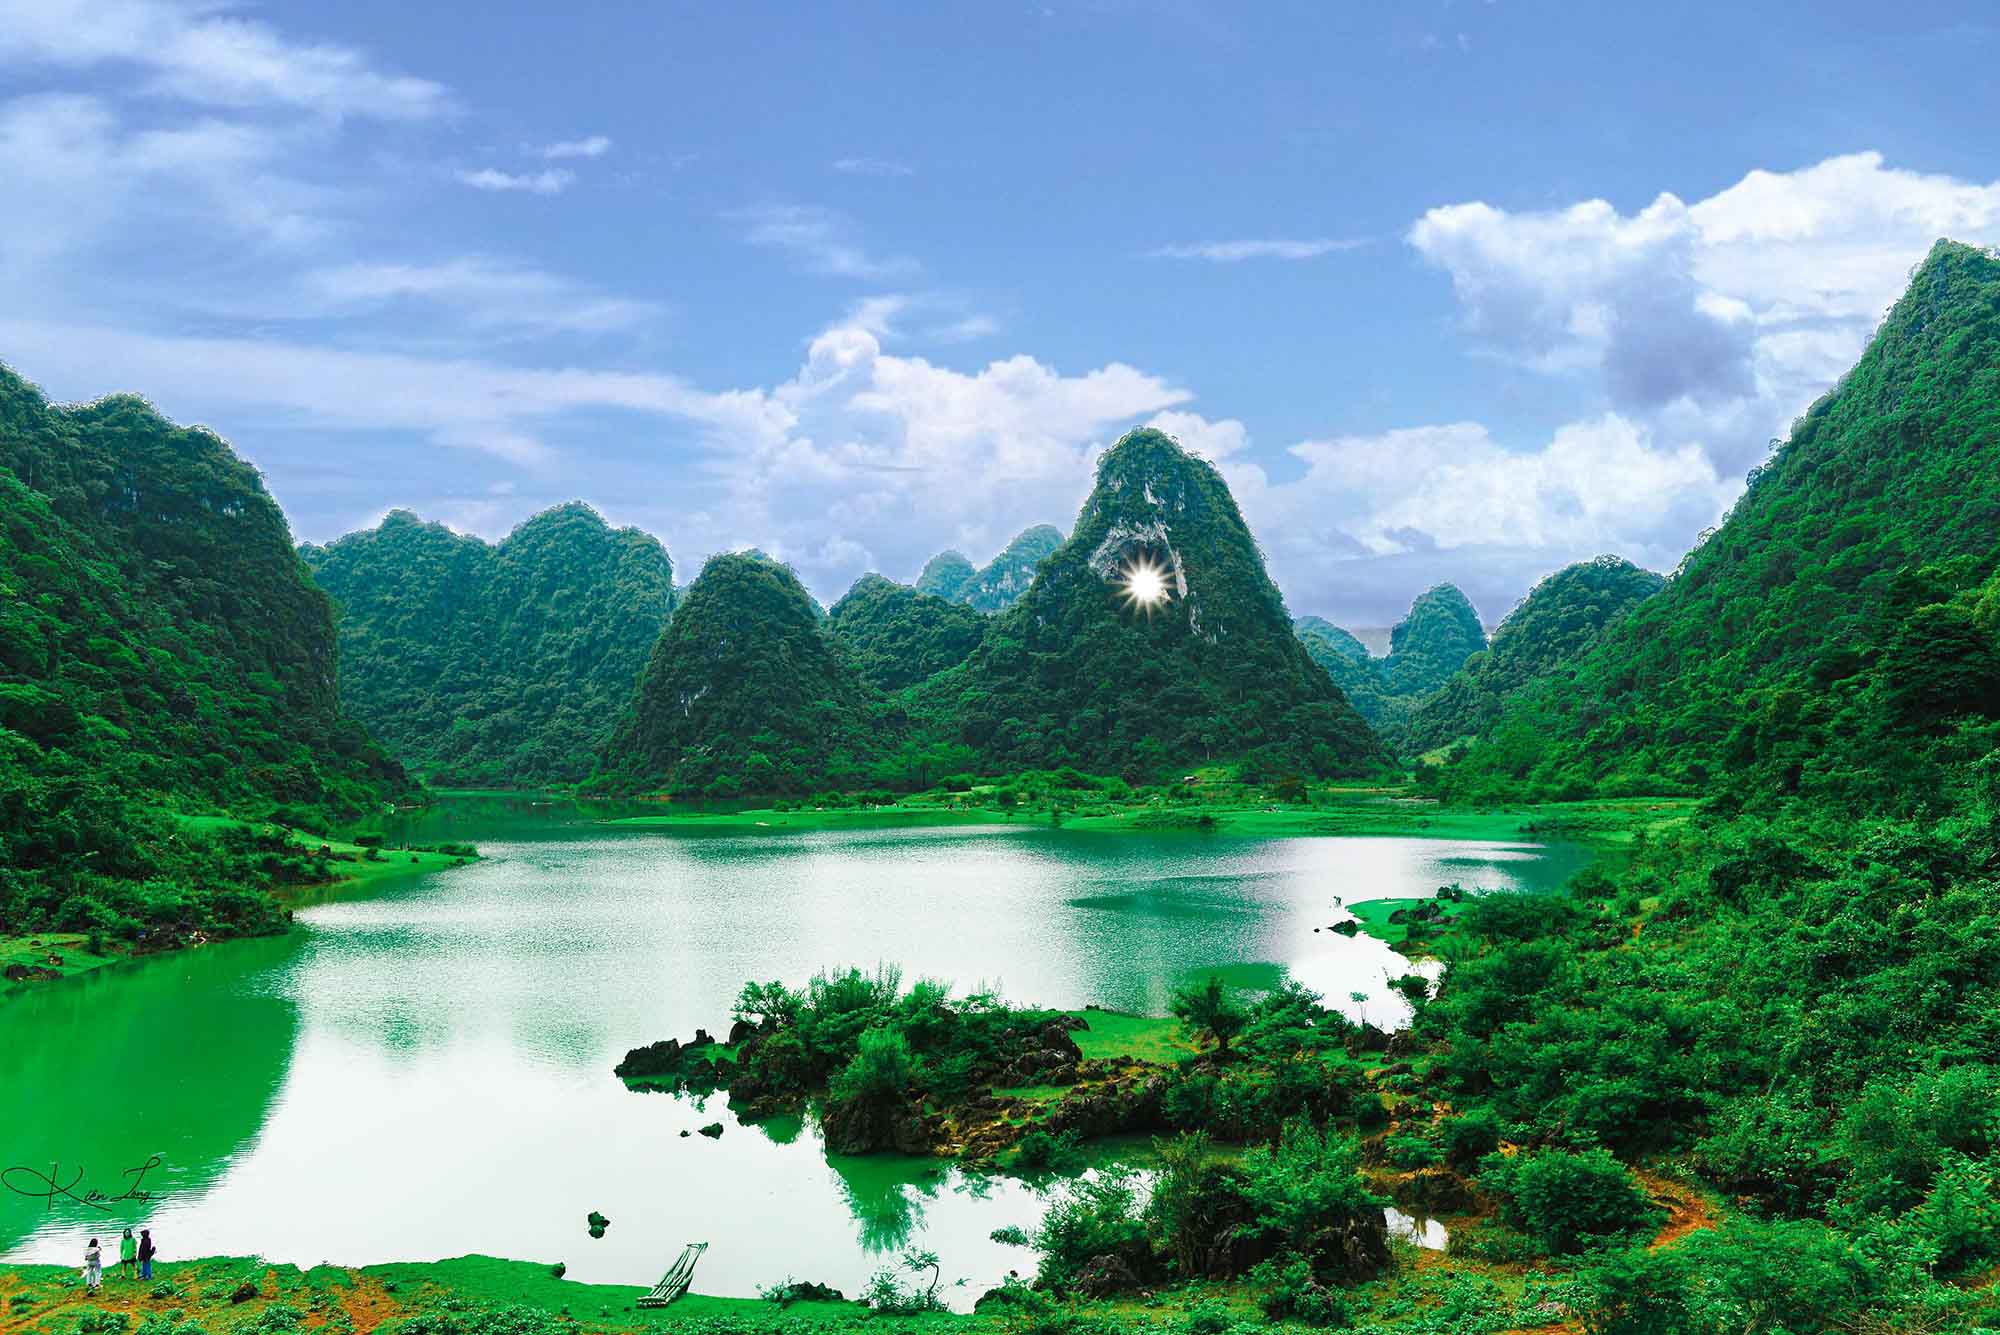 Cao Bằng là một điểm đến đẹp và nổi tiếng ở Việt Nam, với những cảnh quan thiên nhiên tuyệt đẹp như thác Bản Giốc, hồ Ba Bể và đèo Mã Pí Lèng. Hãy xem hình ảnh để khám phá vẻ đẹp tự nhiên của Cao Bằng.